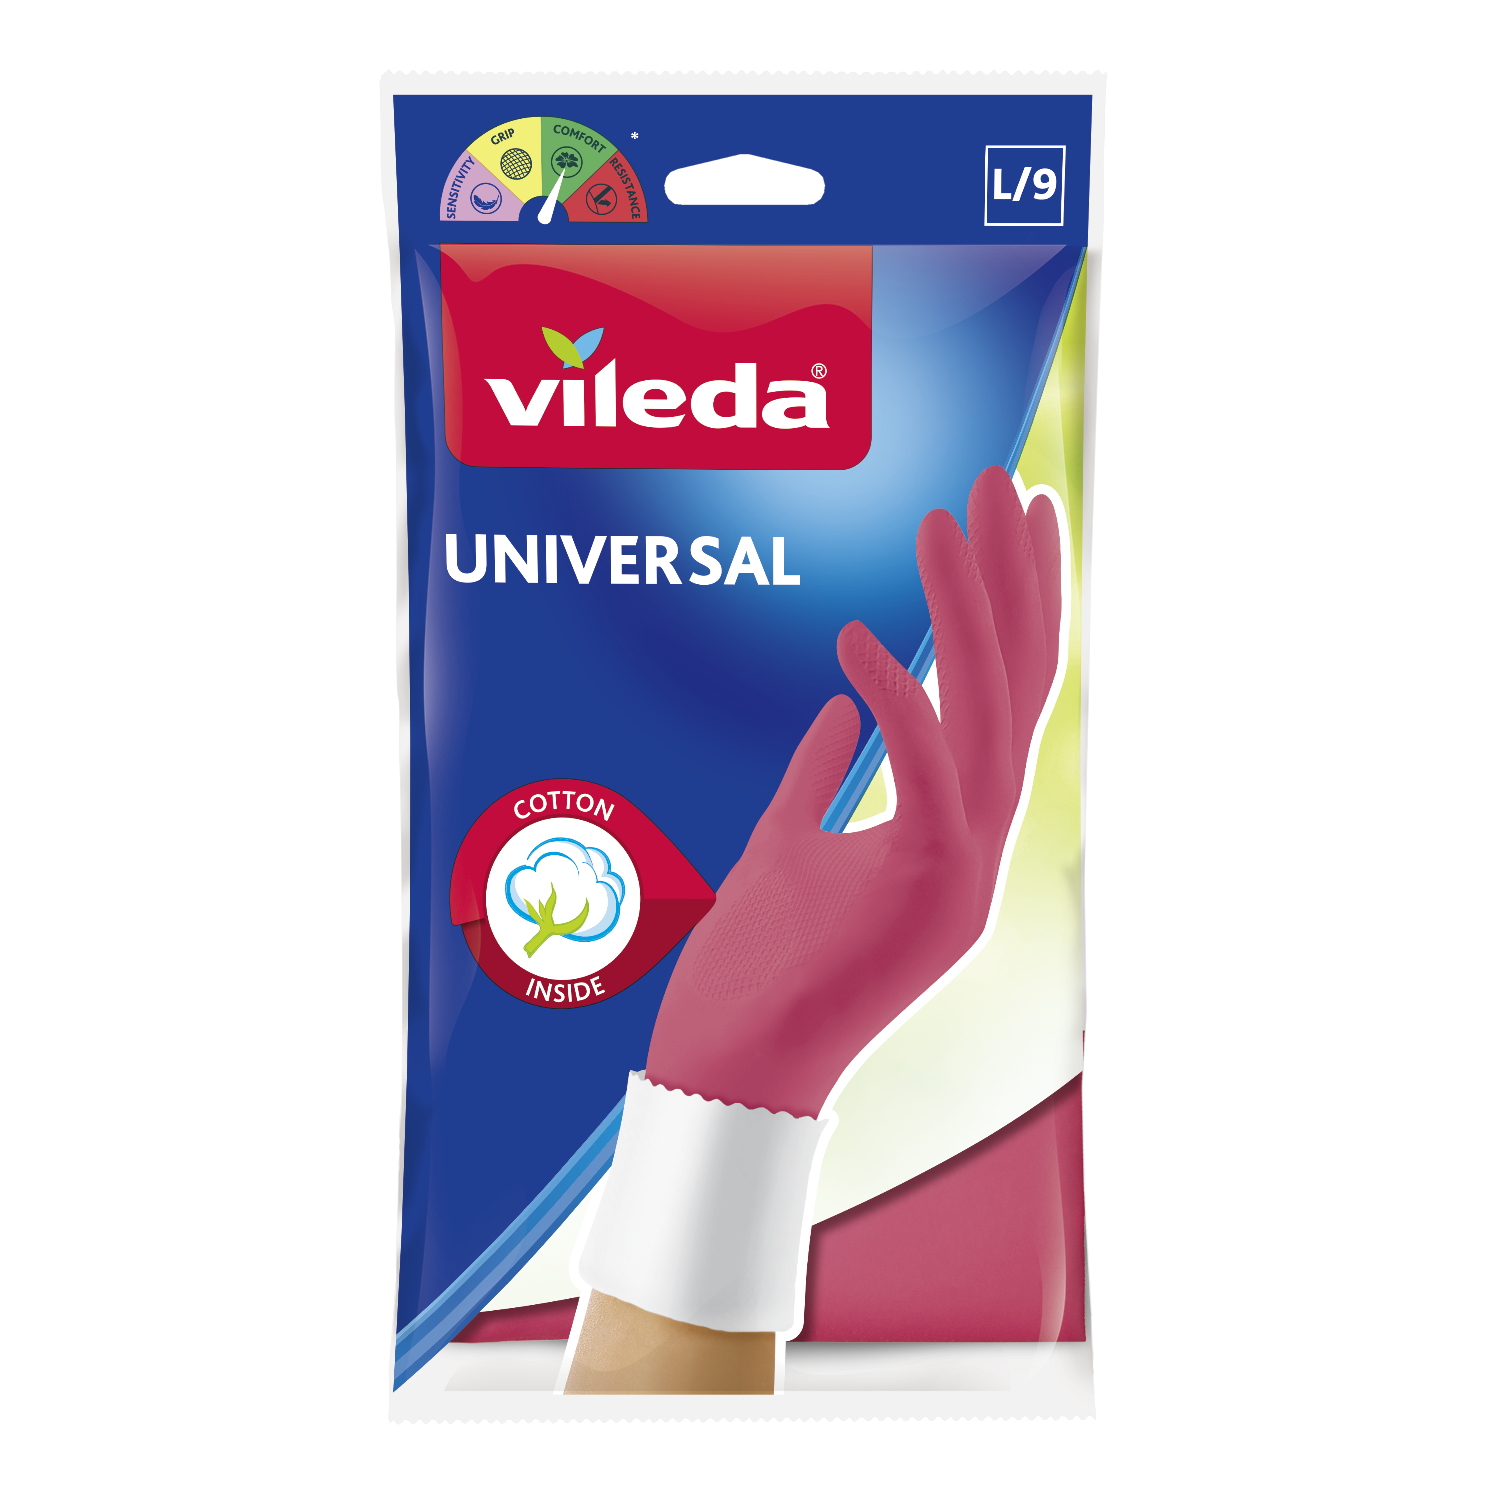 Γάντια Οικιακής Χρήσης Universal Large Vileda ( 1 Τεμ)